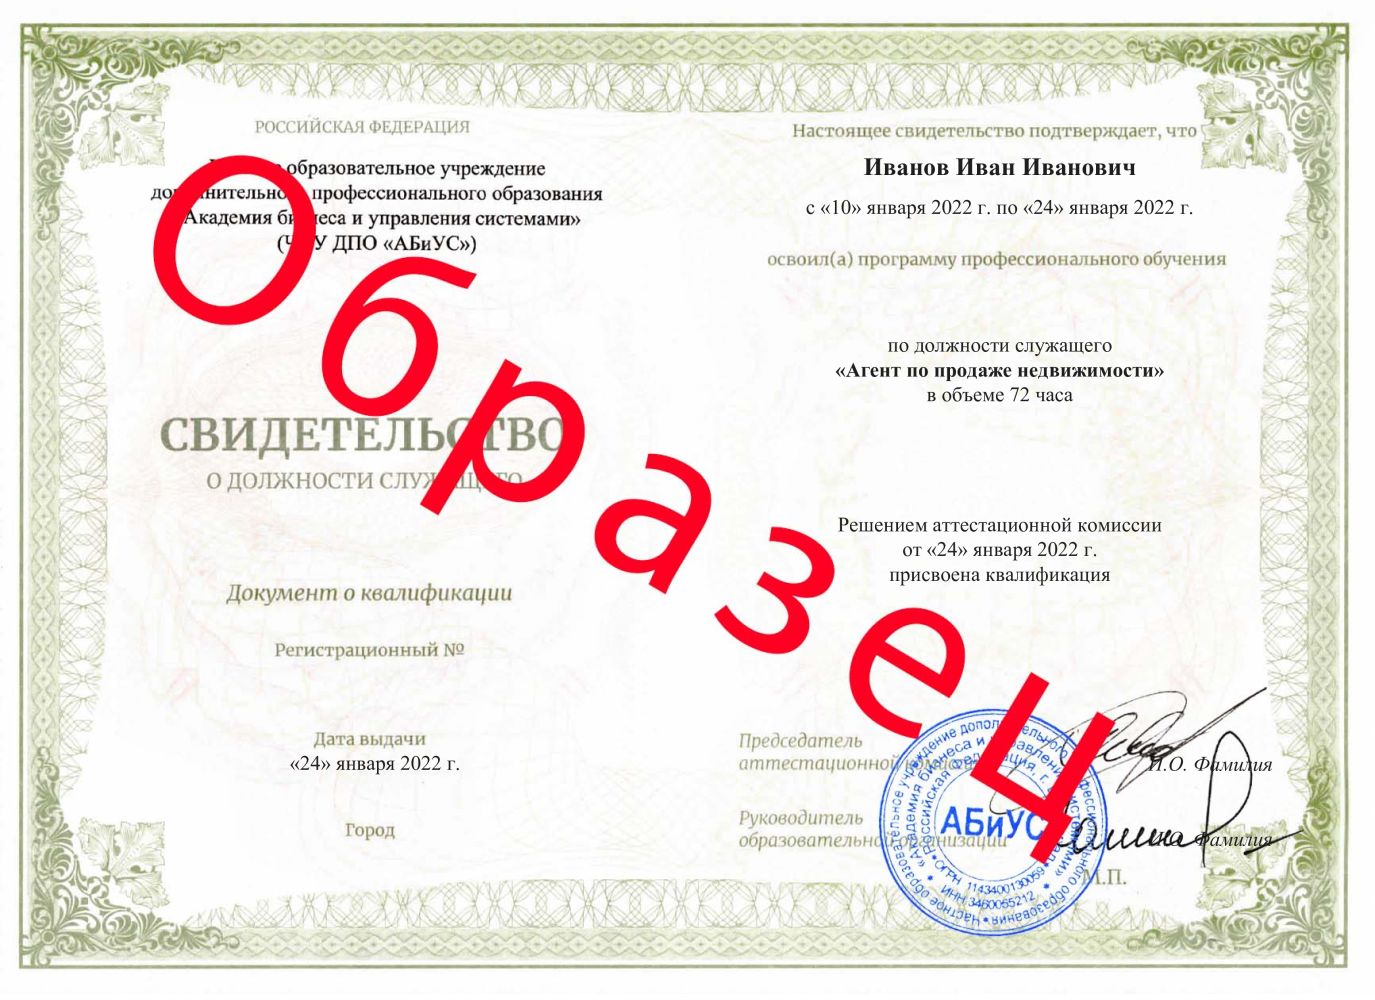 Свидетельство Агент по продаже недвижимости 72 часа 13500 руб.